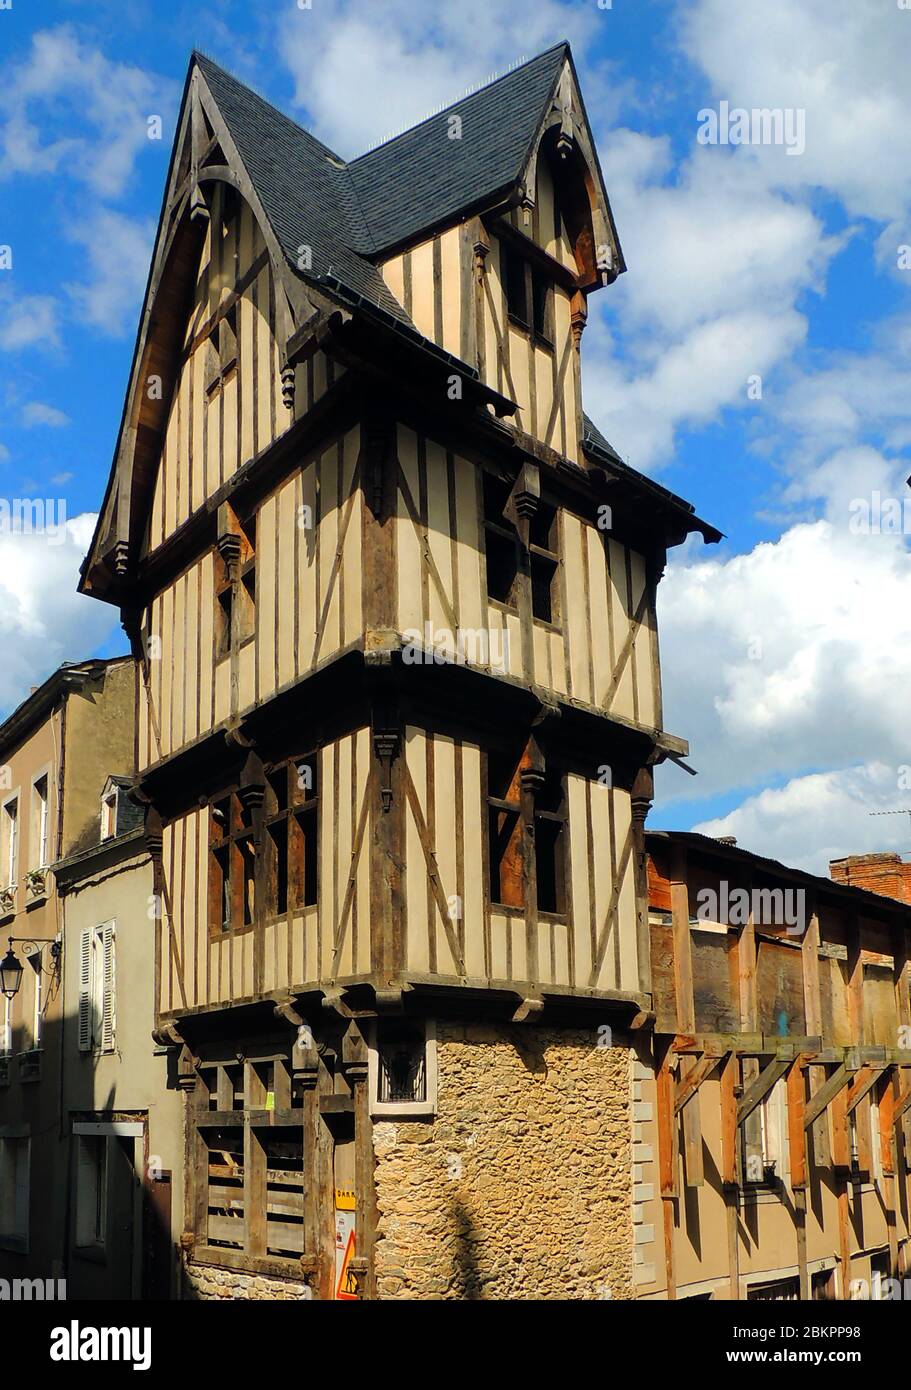 Bâtiments médiévaux de conte de fées à colombages en restauration à Laval, région de Limoges, France Banque D'Images